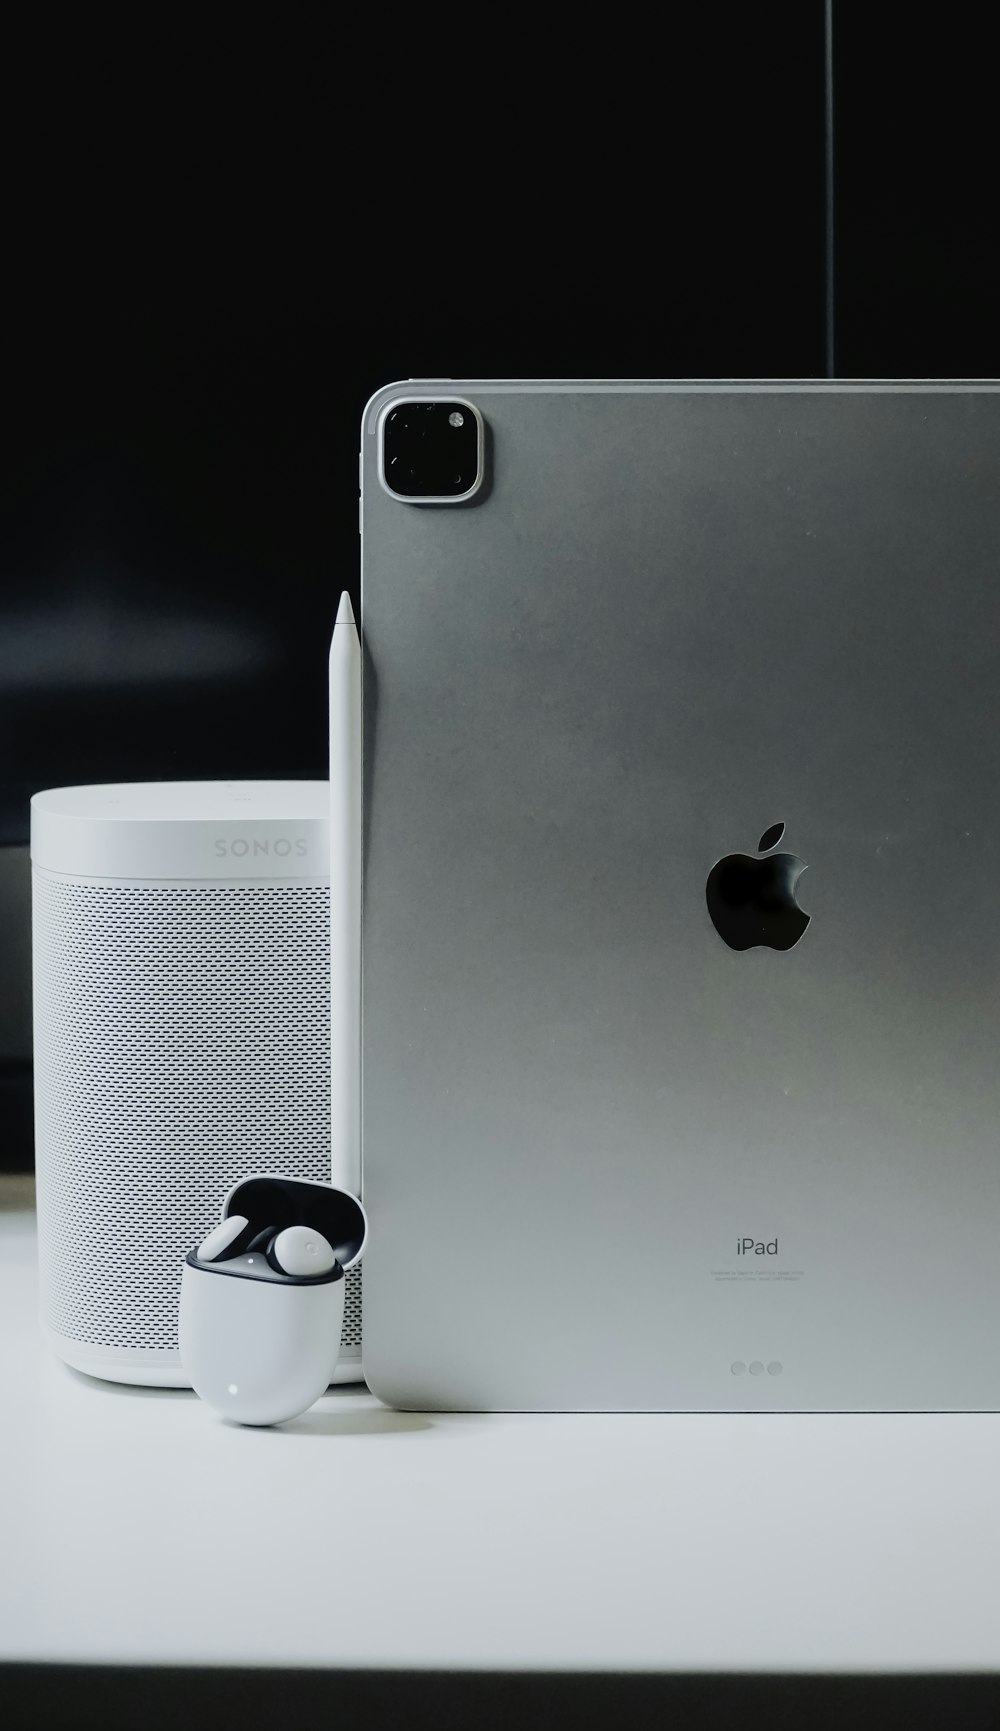 Silber iPhone 6 neben weißer und schwarzer Keramiktasse